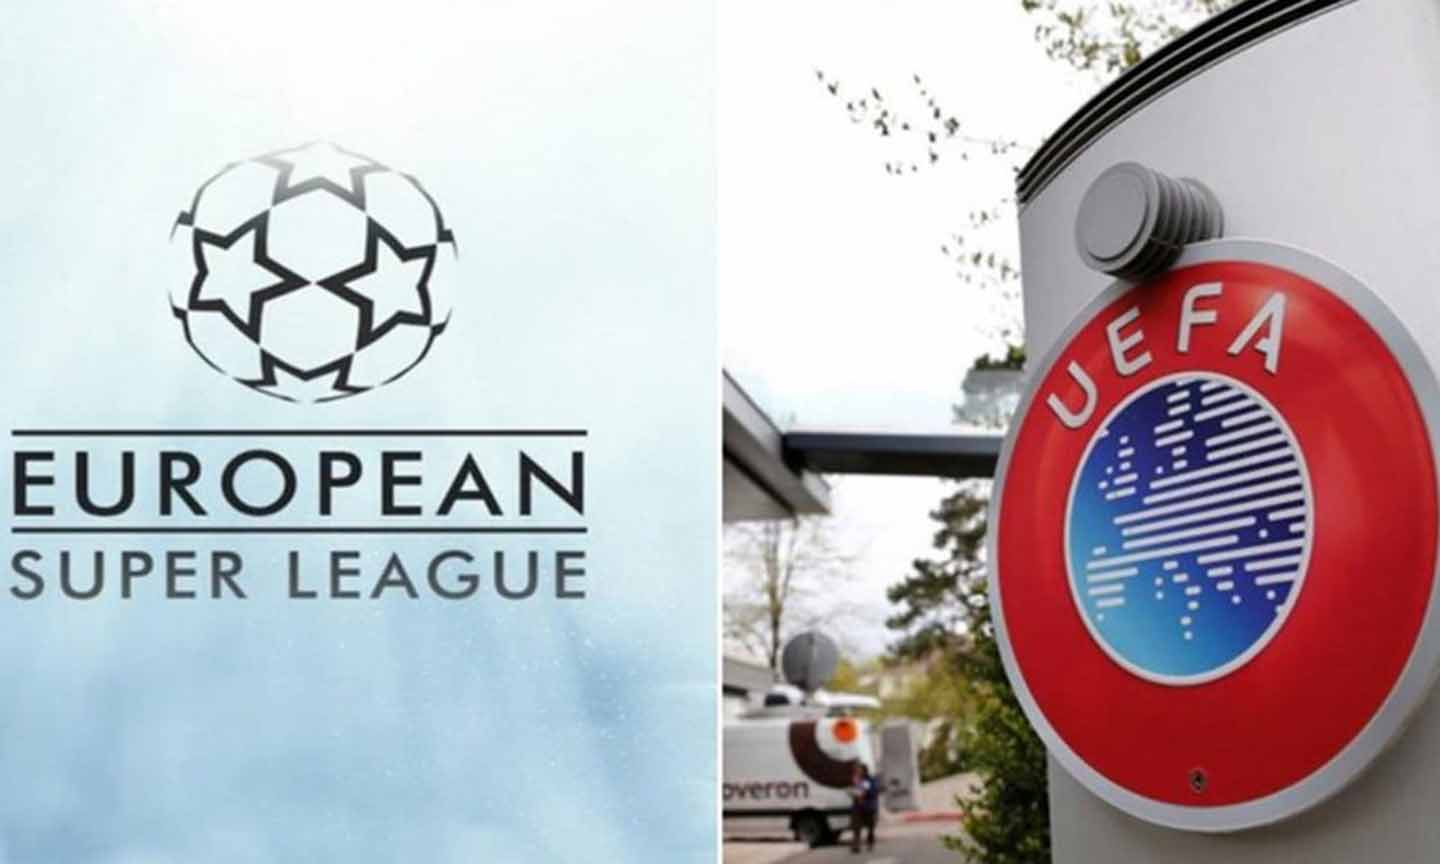 Người hâm mộ chính là người quyết định trong cuộc tranh chấp giữa UEFA và European Super League. ẢNh: UEFA